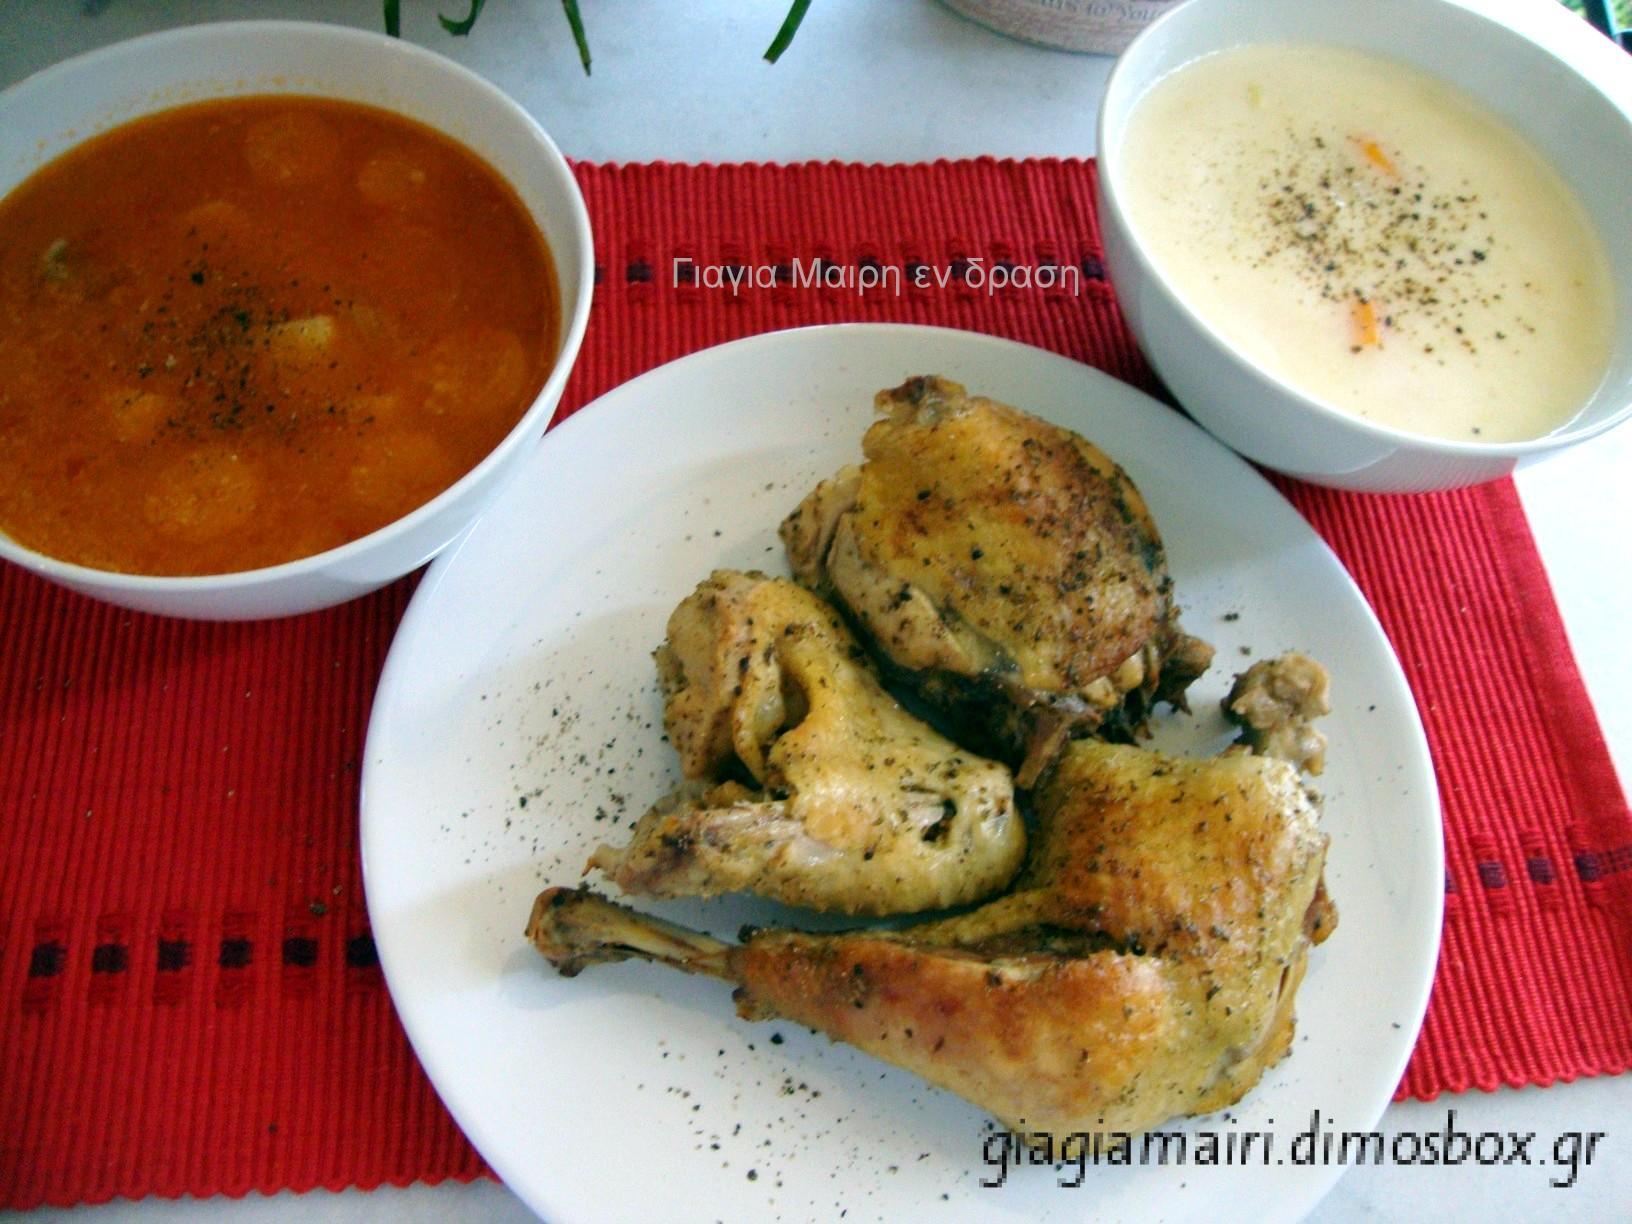 Συνταγή για παιδιά: Φανταστική Κοτόσουπα σε δυο γεύσεις!